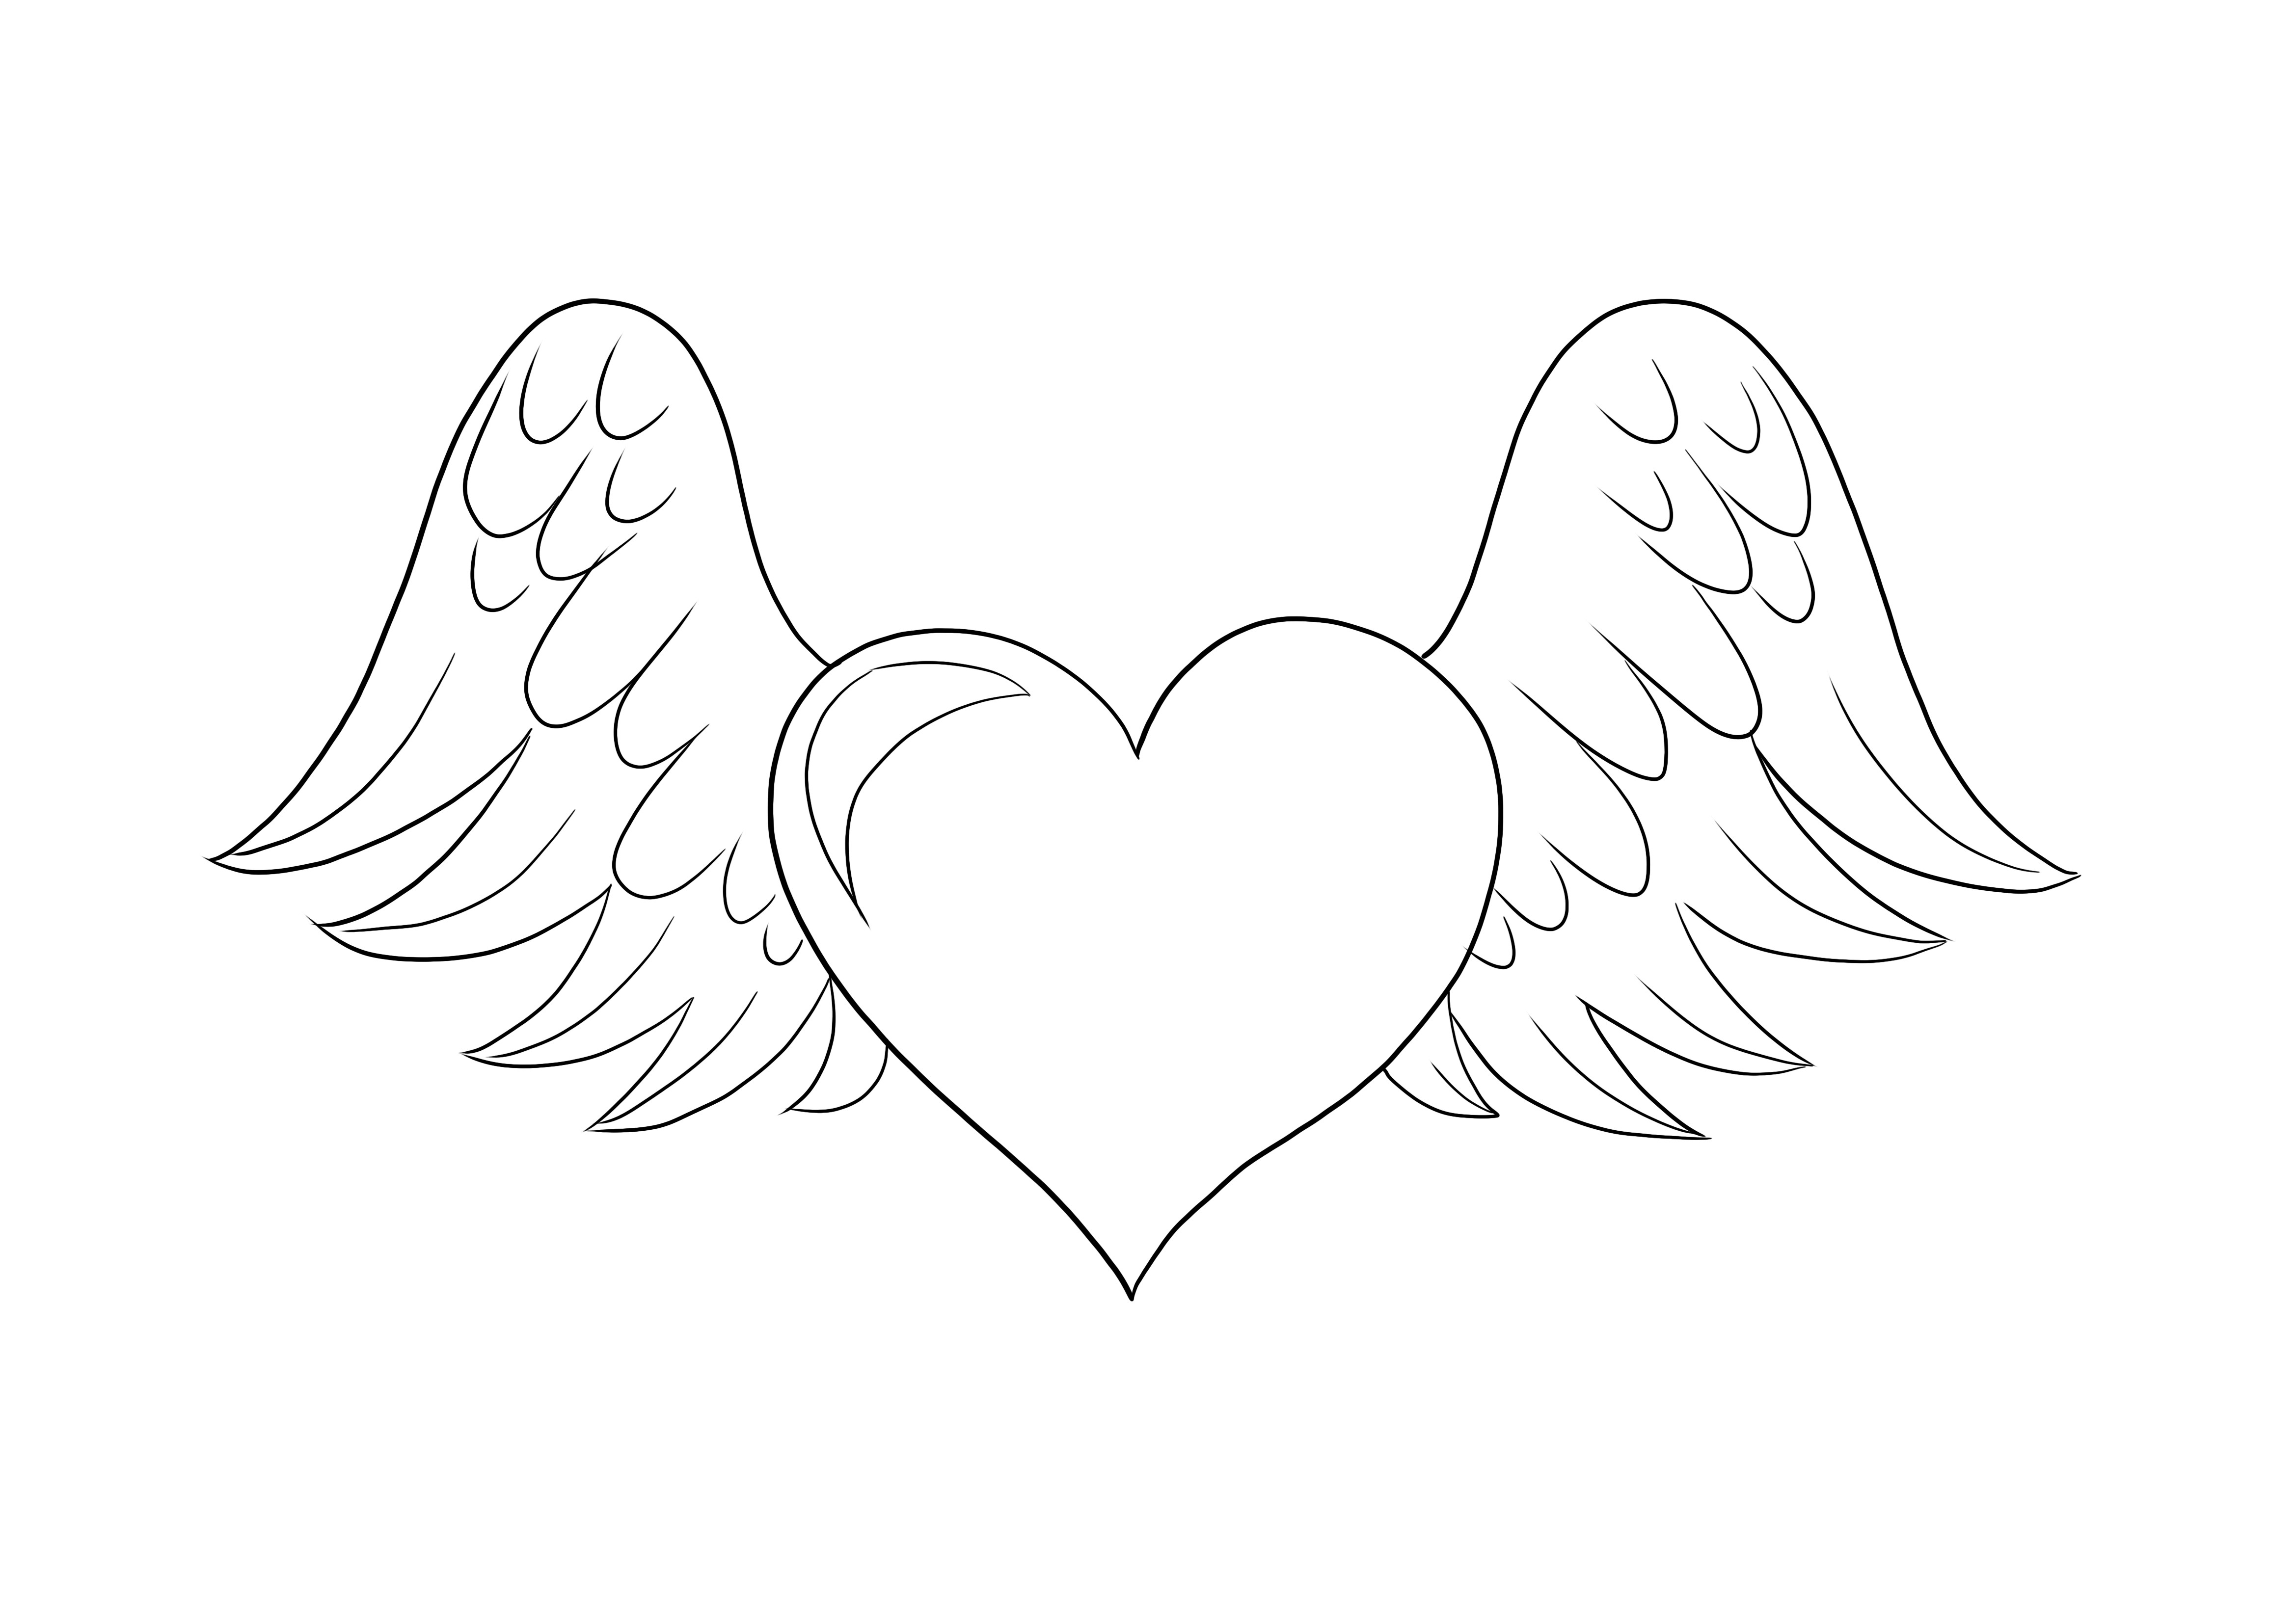 Herz mit Flügeln zum Ausmalen für Kinder zum kostenlosen Download